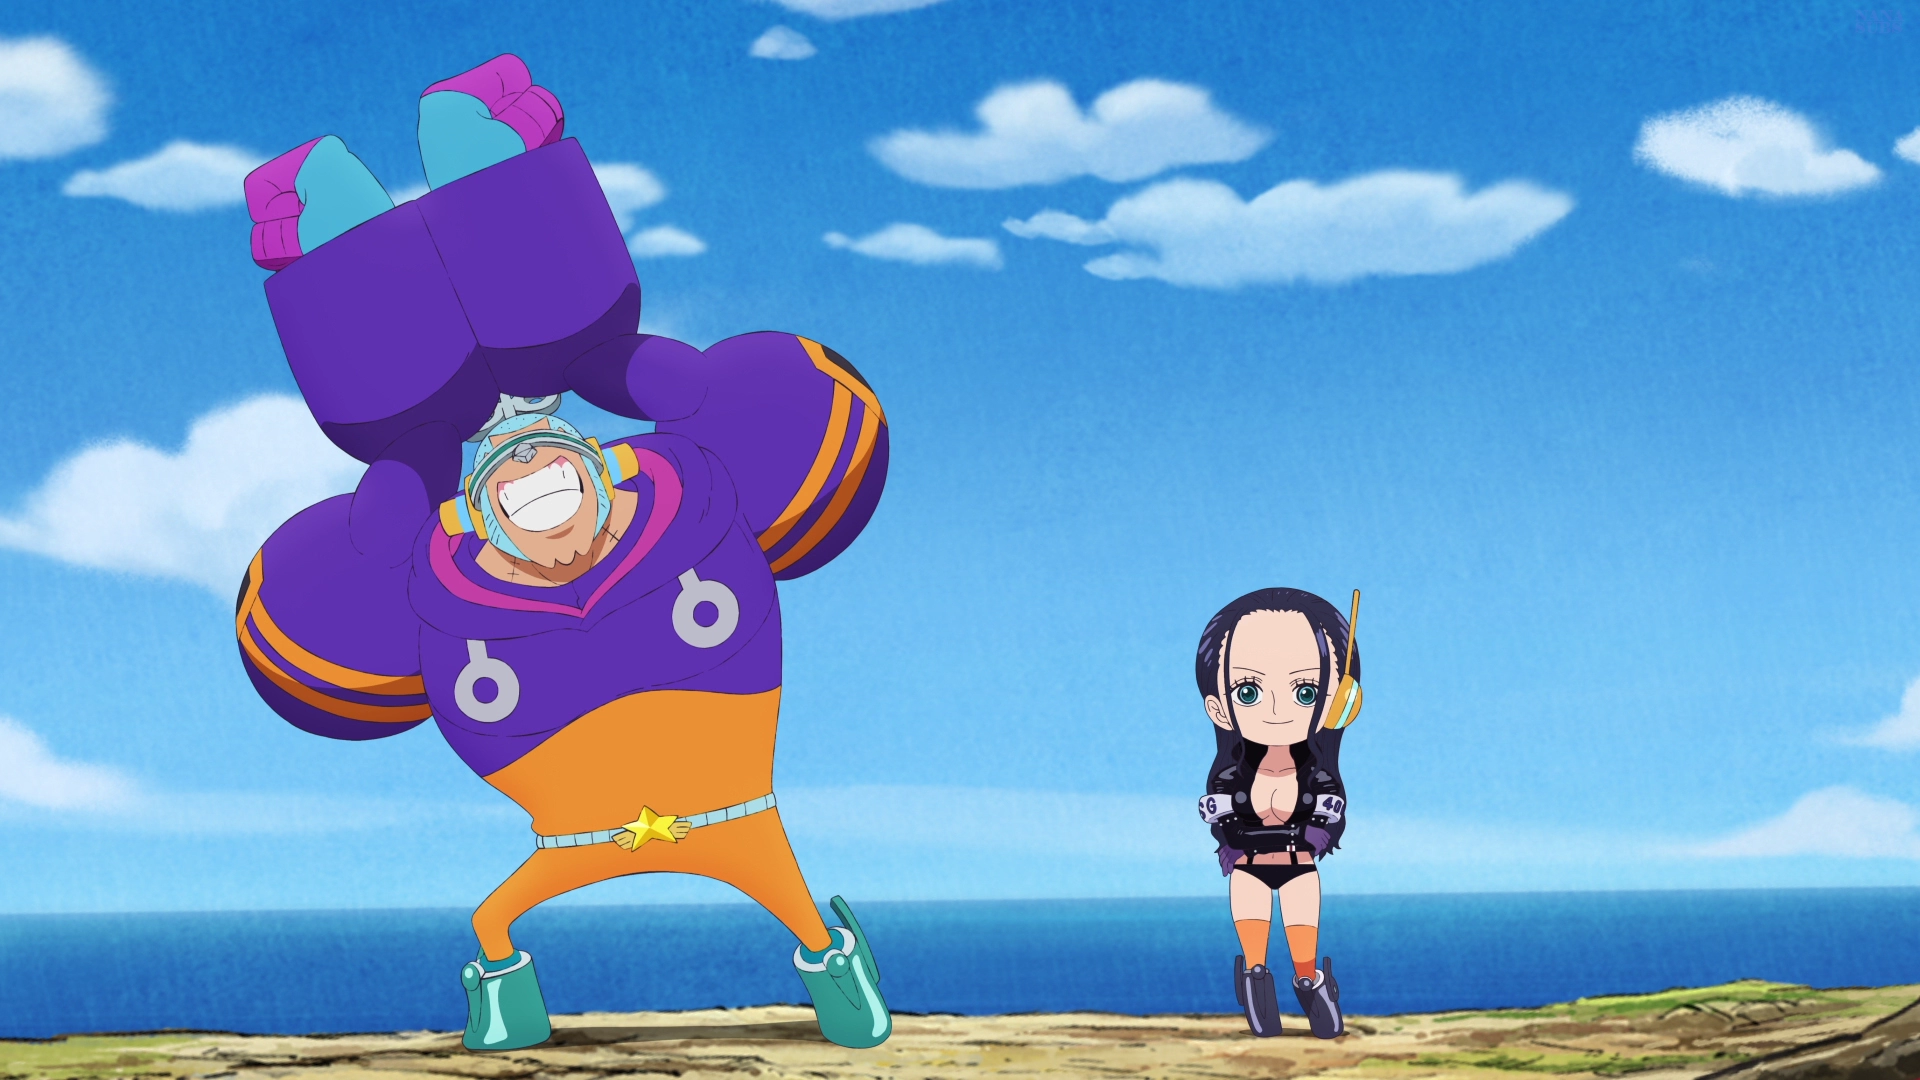 Minaturka 1100.5 odcinka One Piece